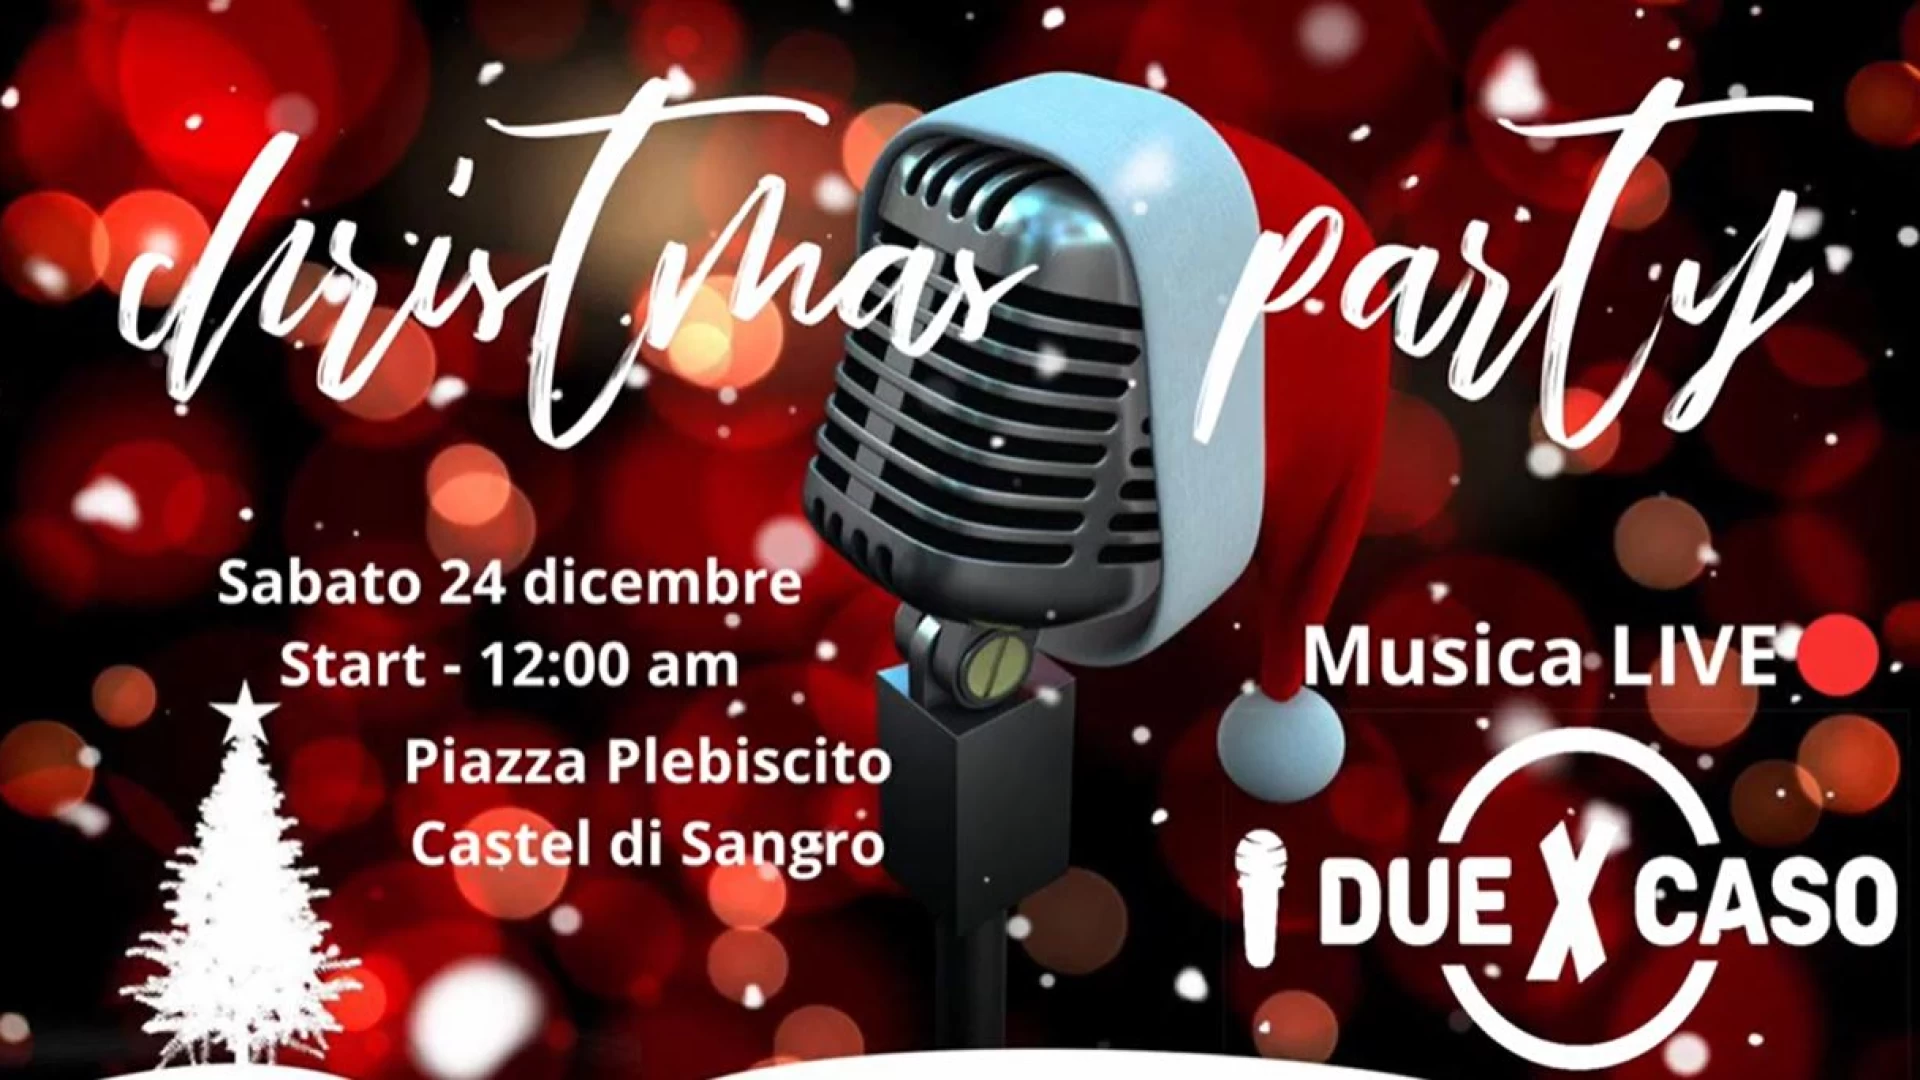 Una Vigilia di Natale da non perdere a Castel Di Sangro con il Christmas Party. Guarda il video promo